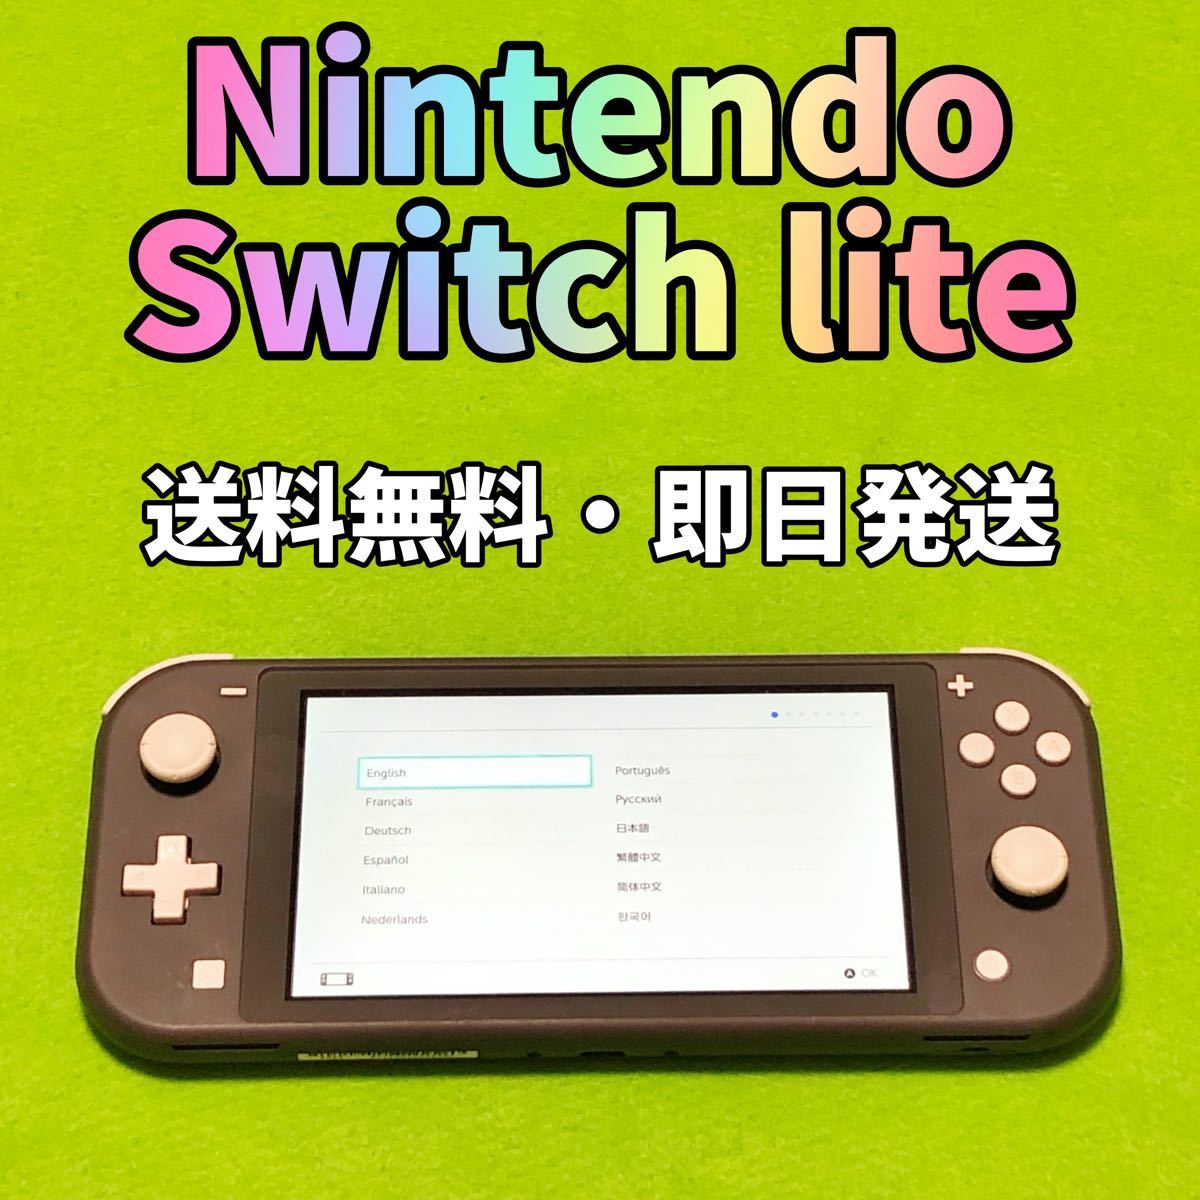 カテゴリ Nintendo Switch Lite ターコイズ 新品未使用品の通販 by 